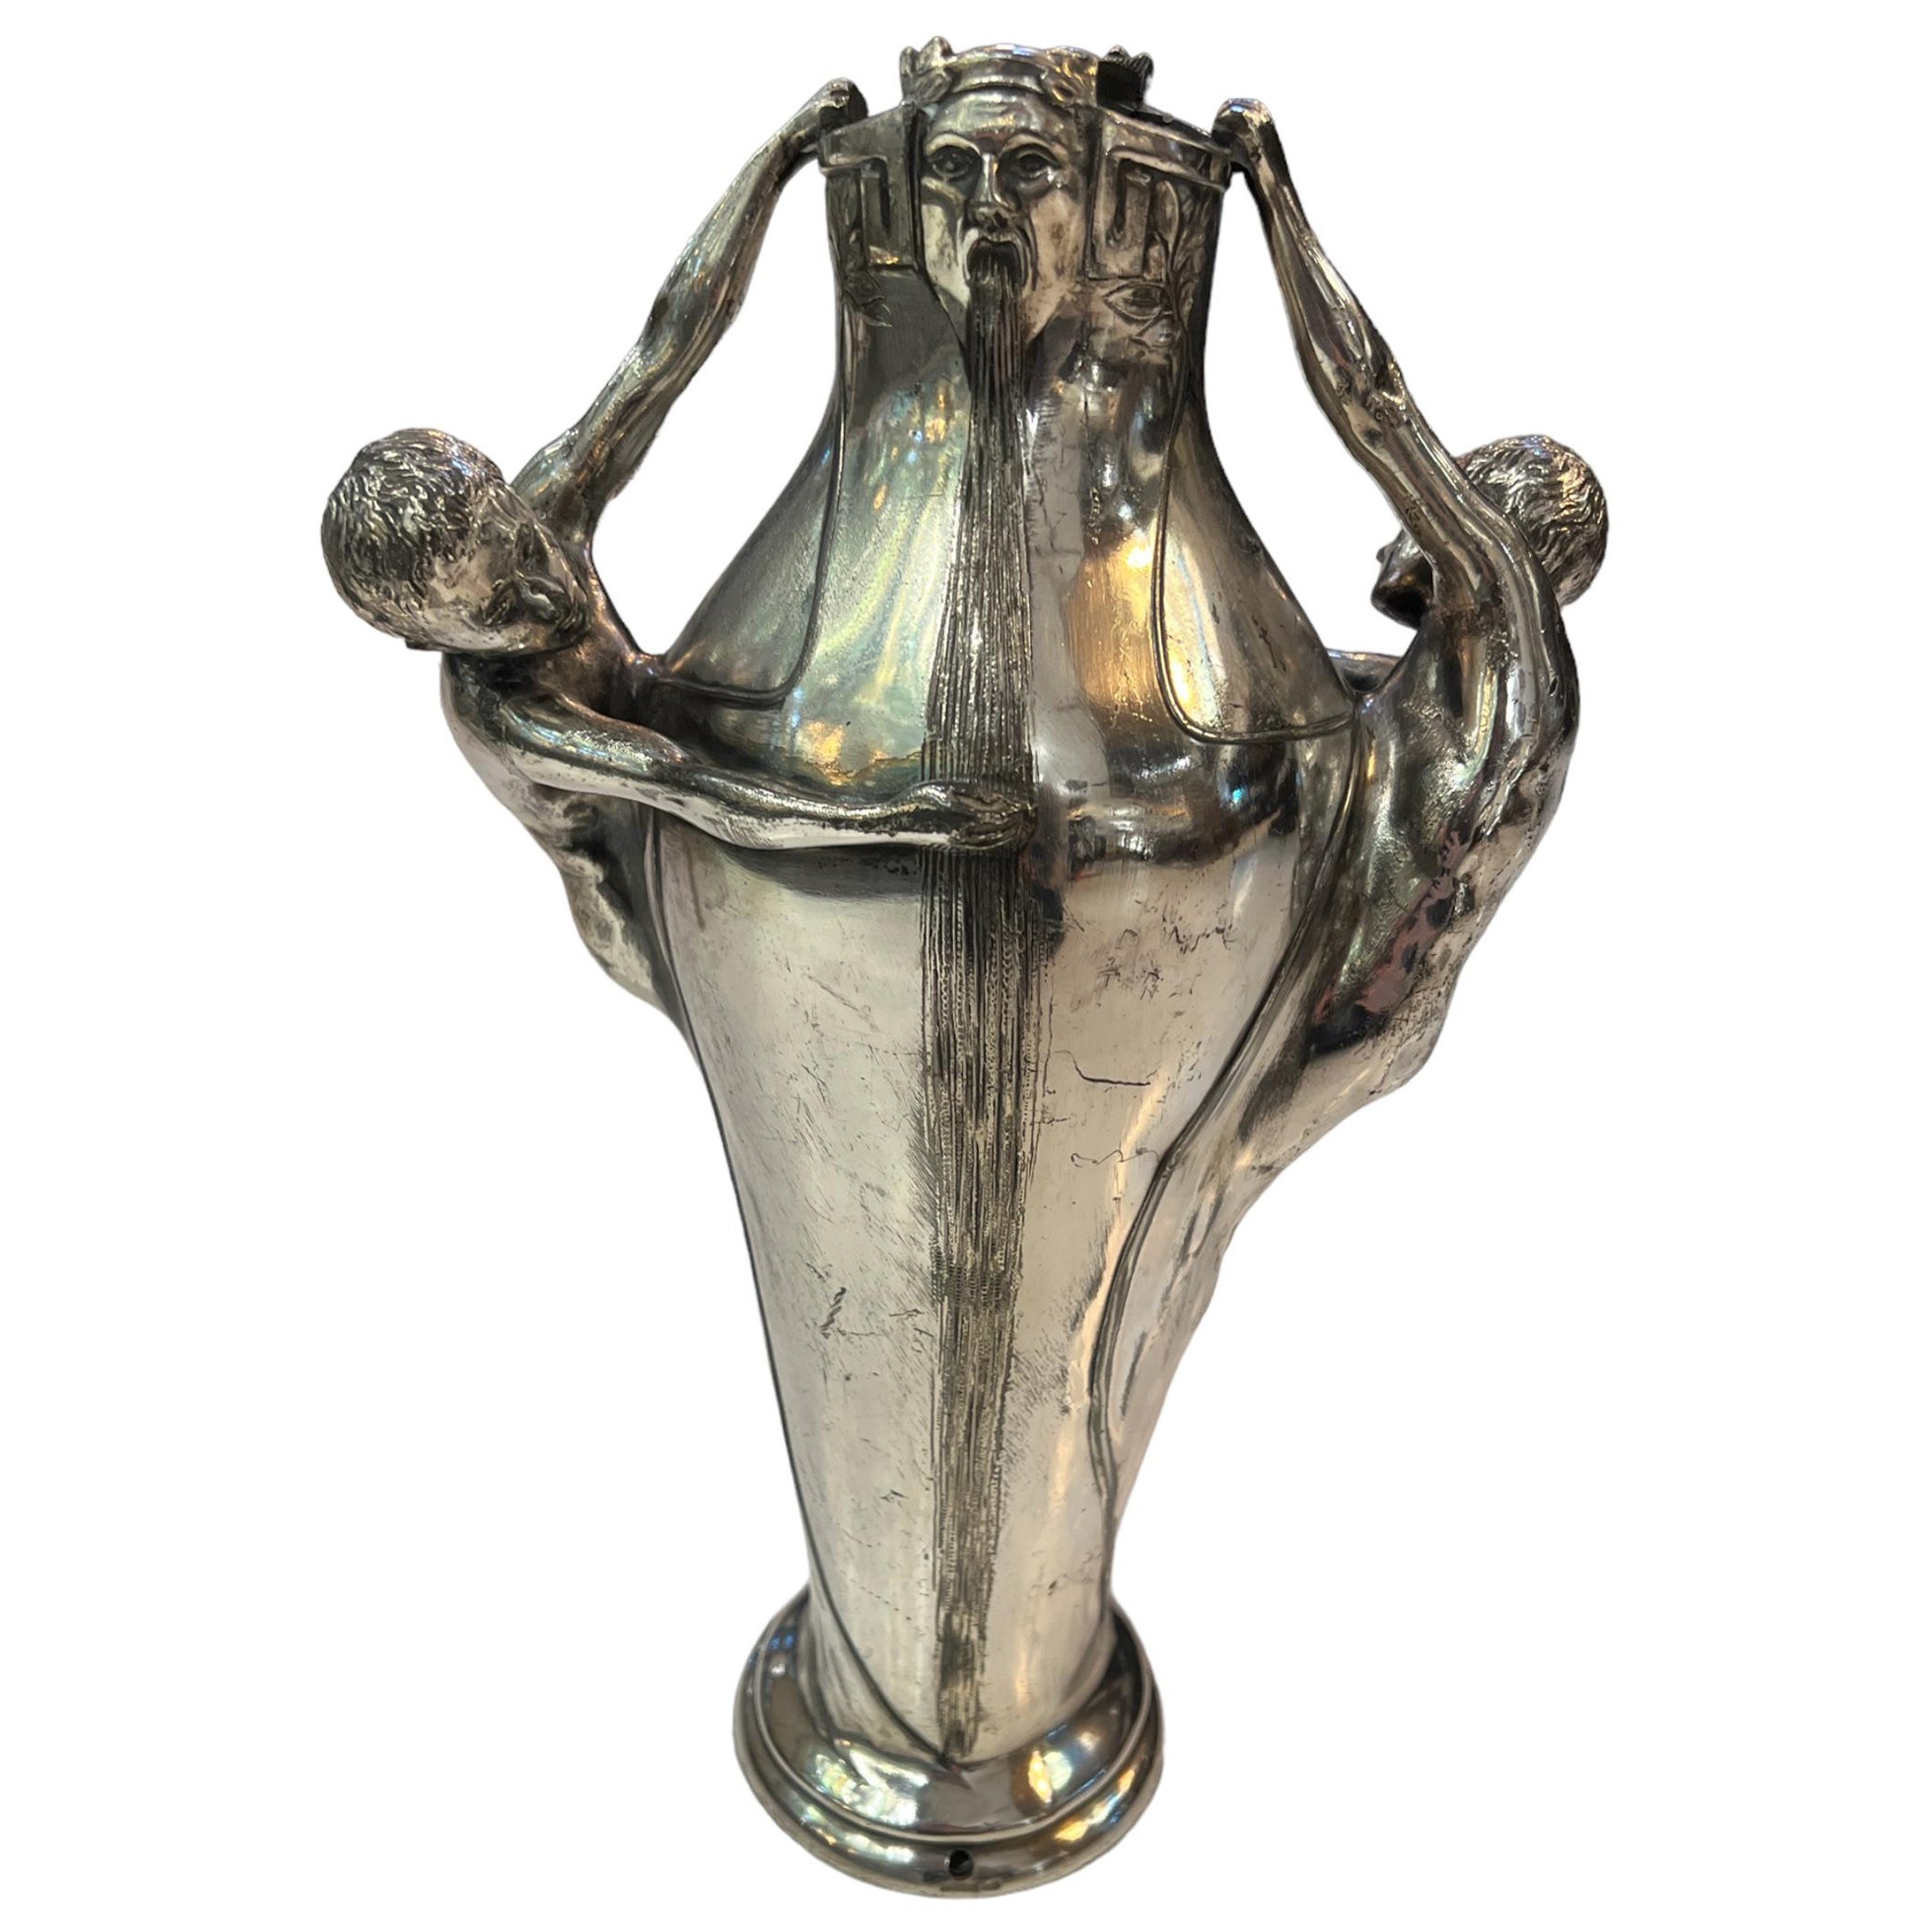 Jar, Jugendstil, Art Nouveau, Liberty, 1900, Sign: Argentor For Sale